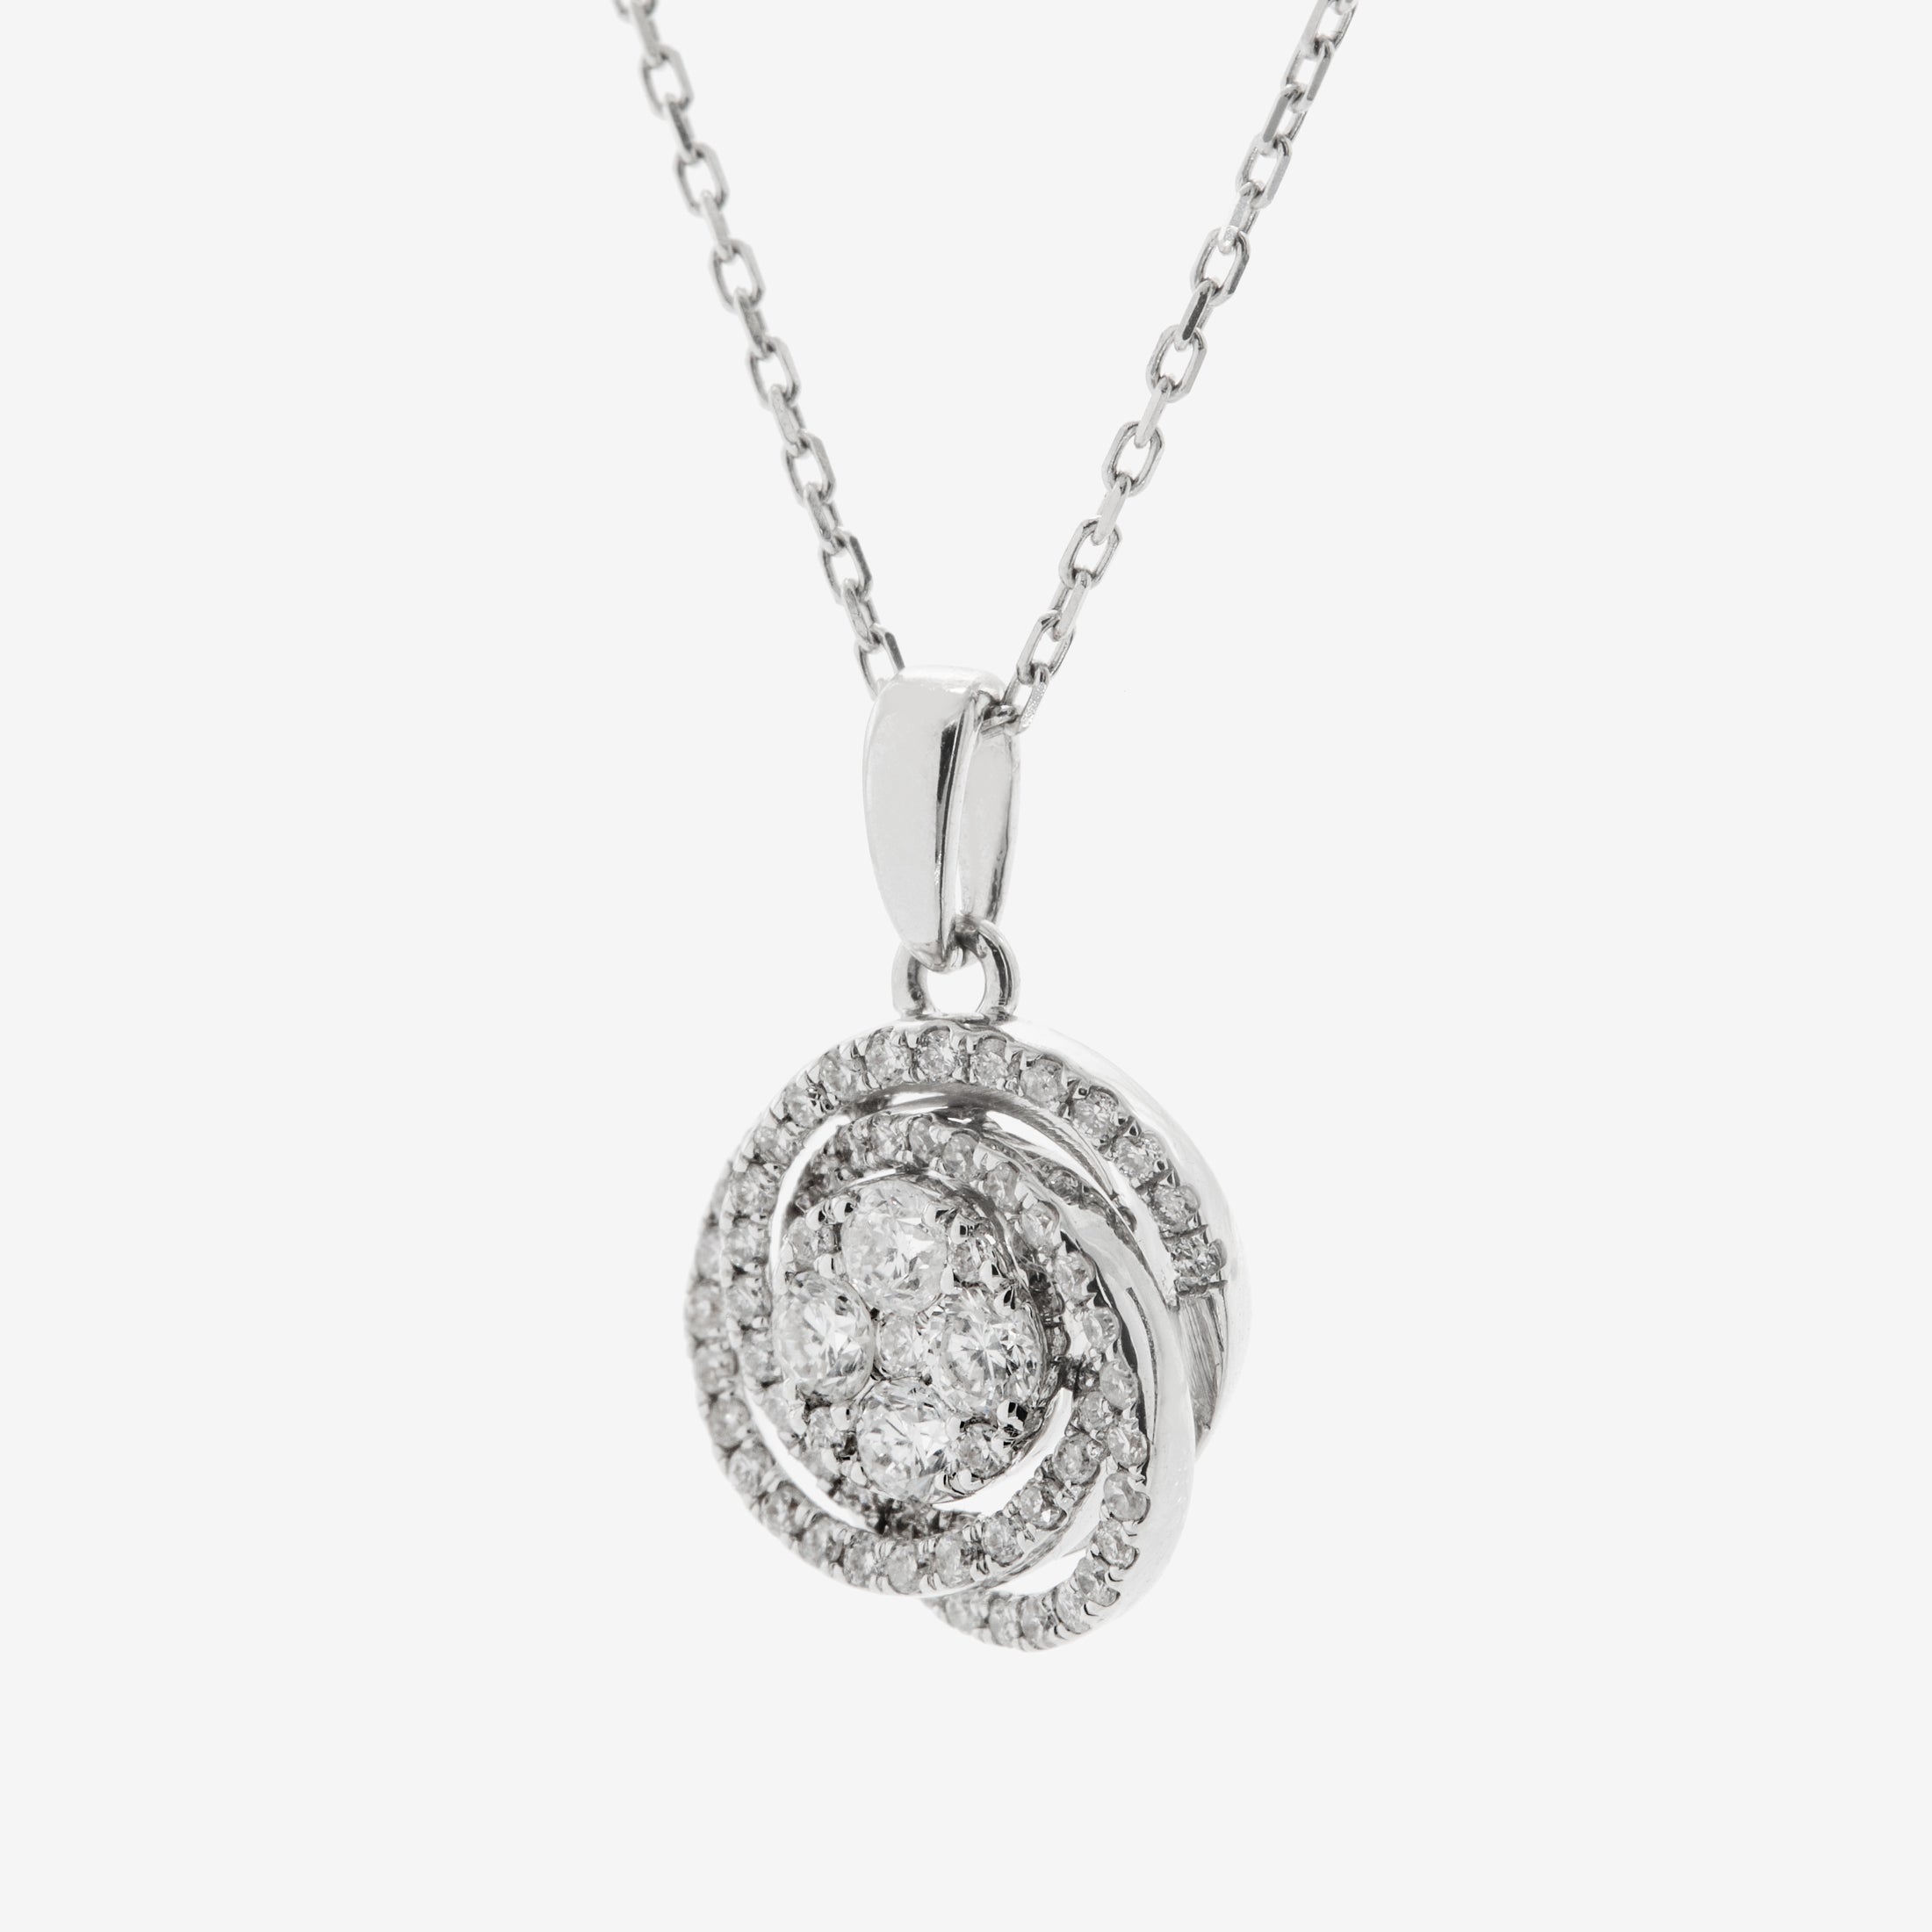 Cruz necklace with diamonds